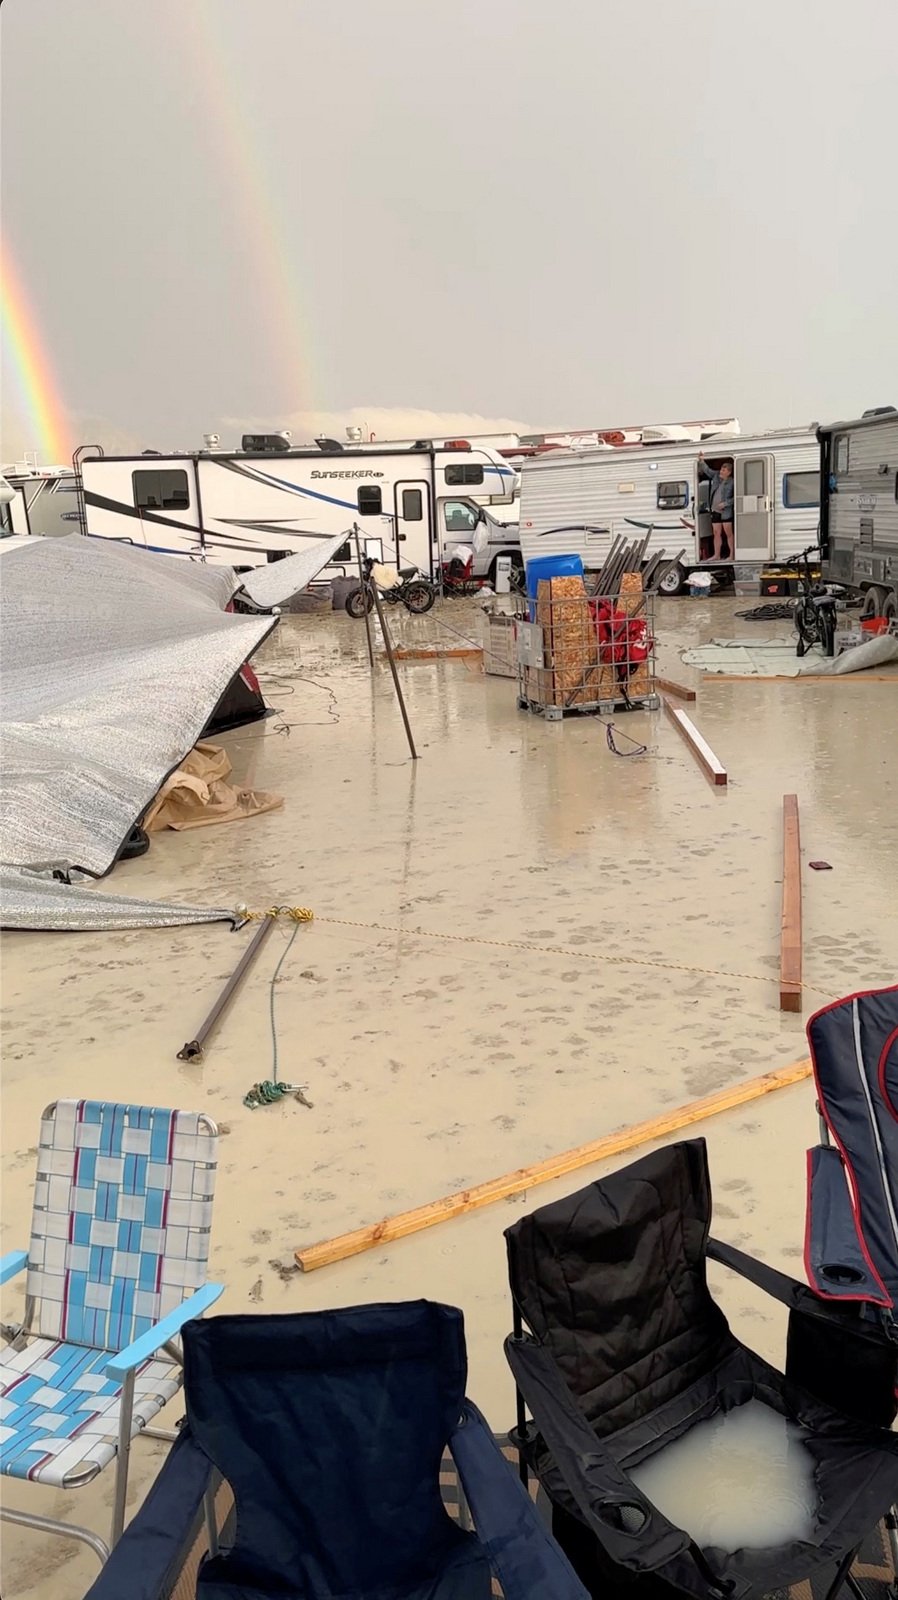 Americký festival Burning man (Hořící muž) narušil silný déšť.